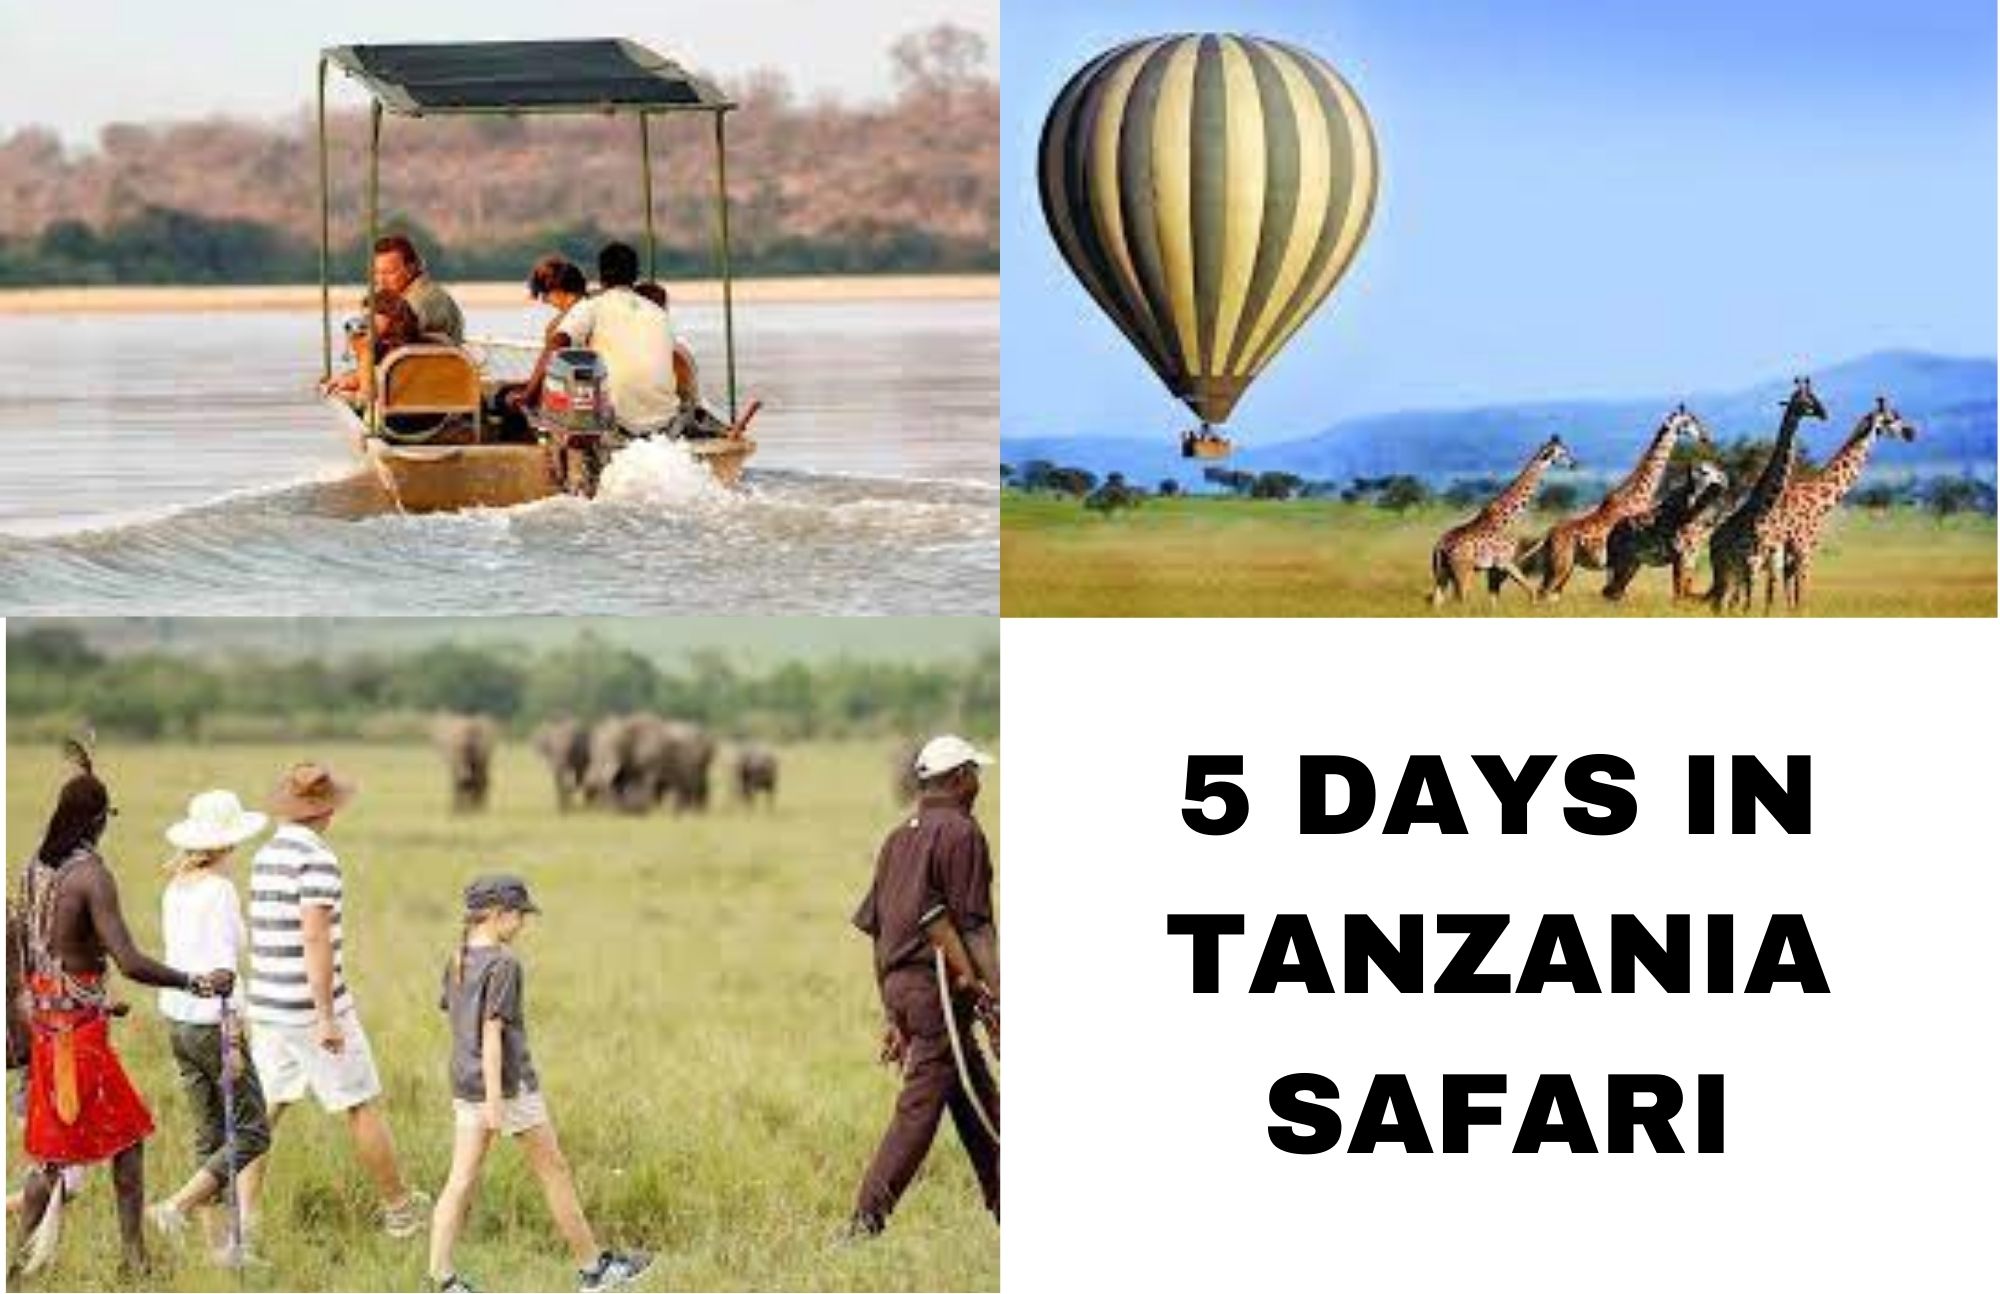 5 Days Safari Prices- Calculate How Much A Five-Day Tanzania Safari Will Cost You